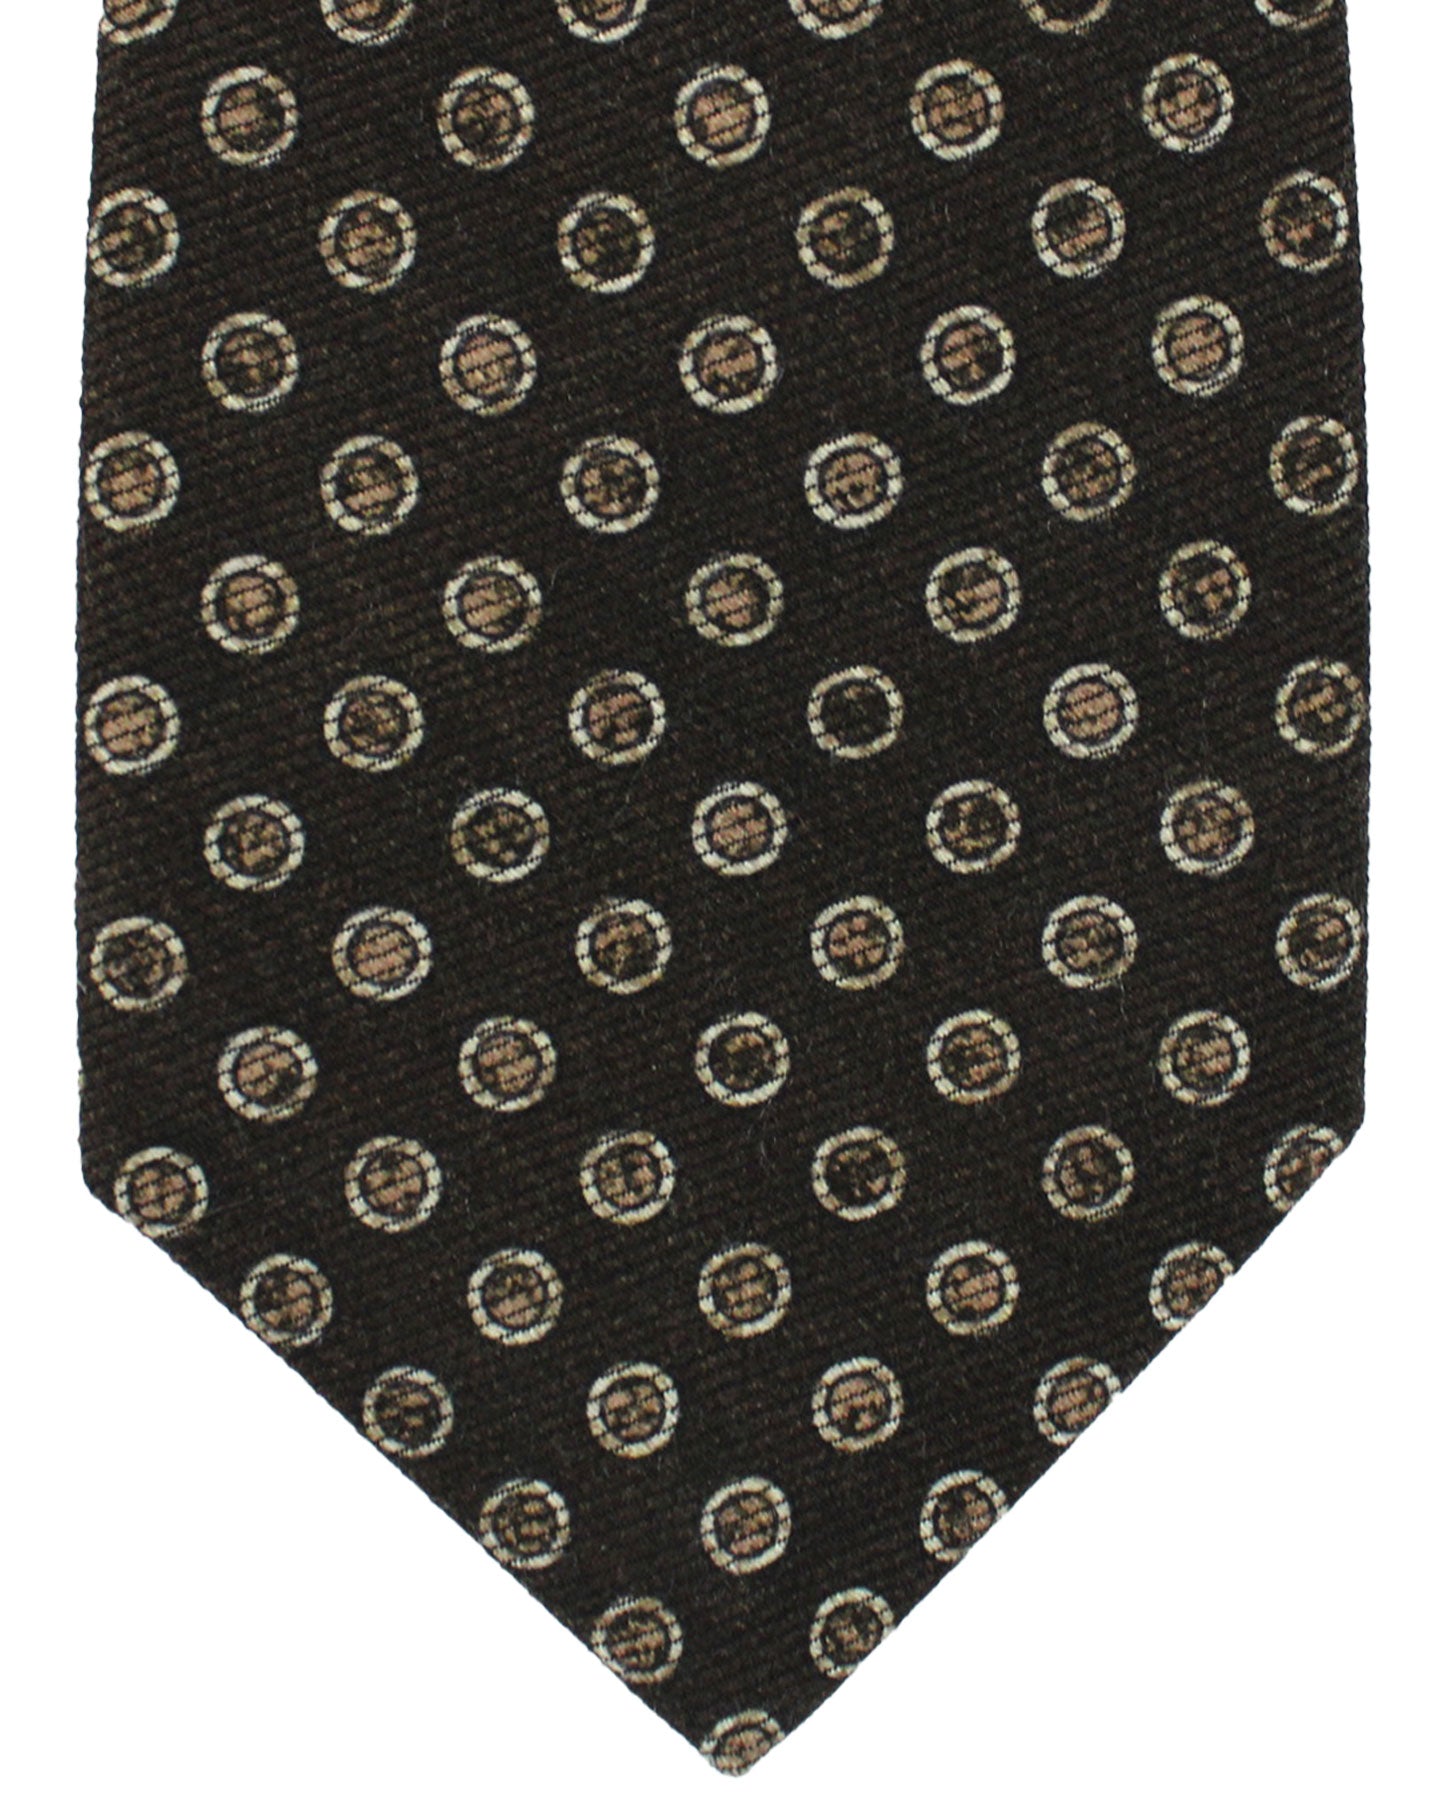 Kiton Wool Silk Tie Brown Polka Dots Design - Sevenfold Necktie